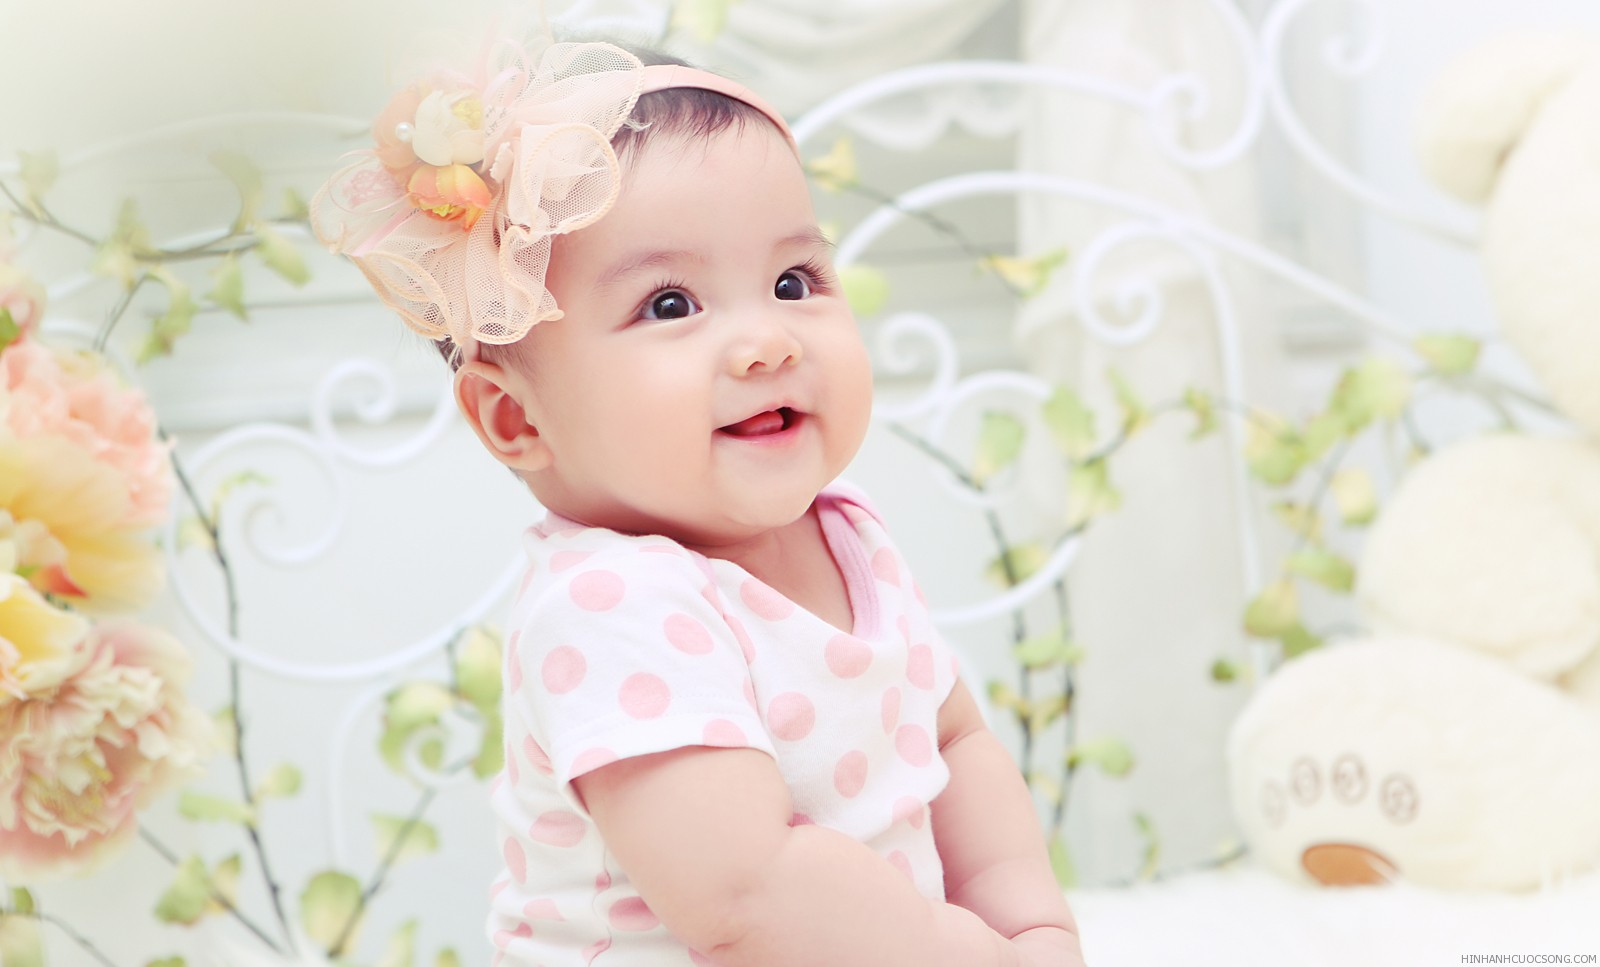 Các mẹo giúp trẻ sơ sinh trắng da an toàn, hiệu quả tại nhà